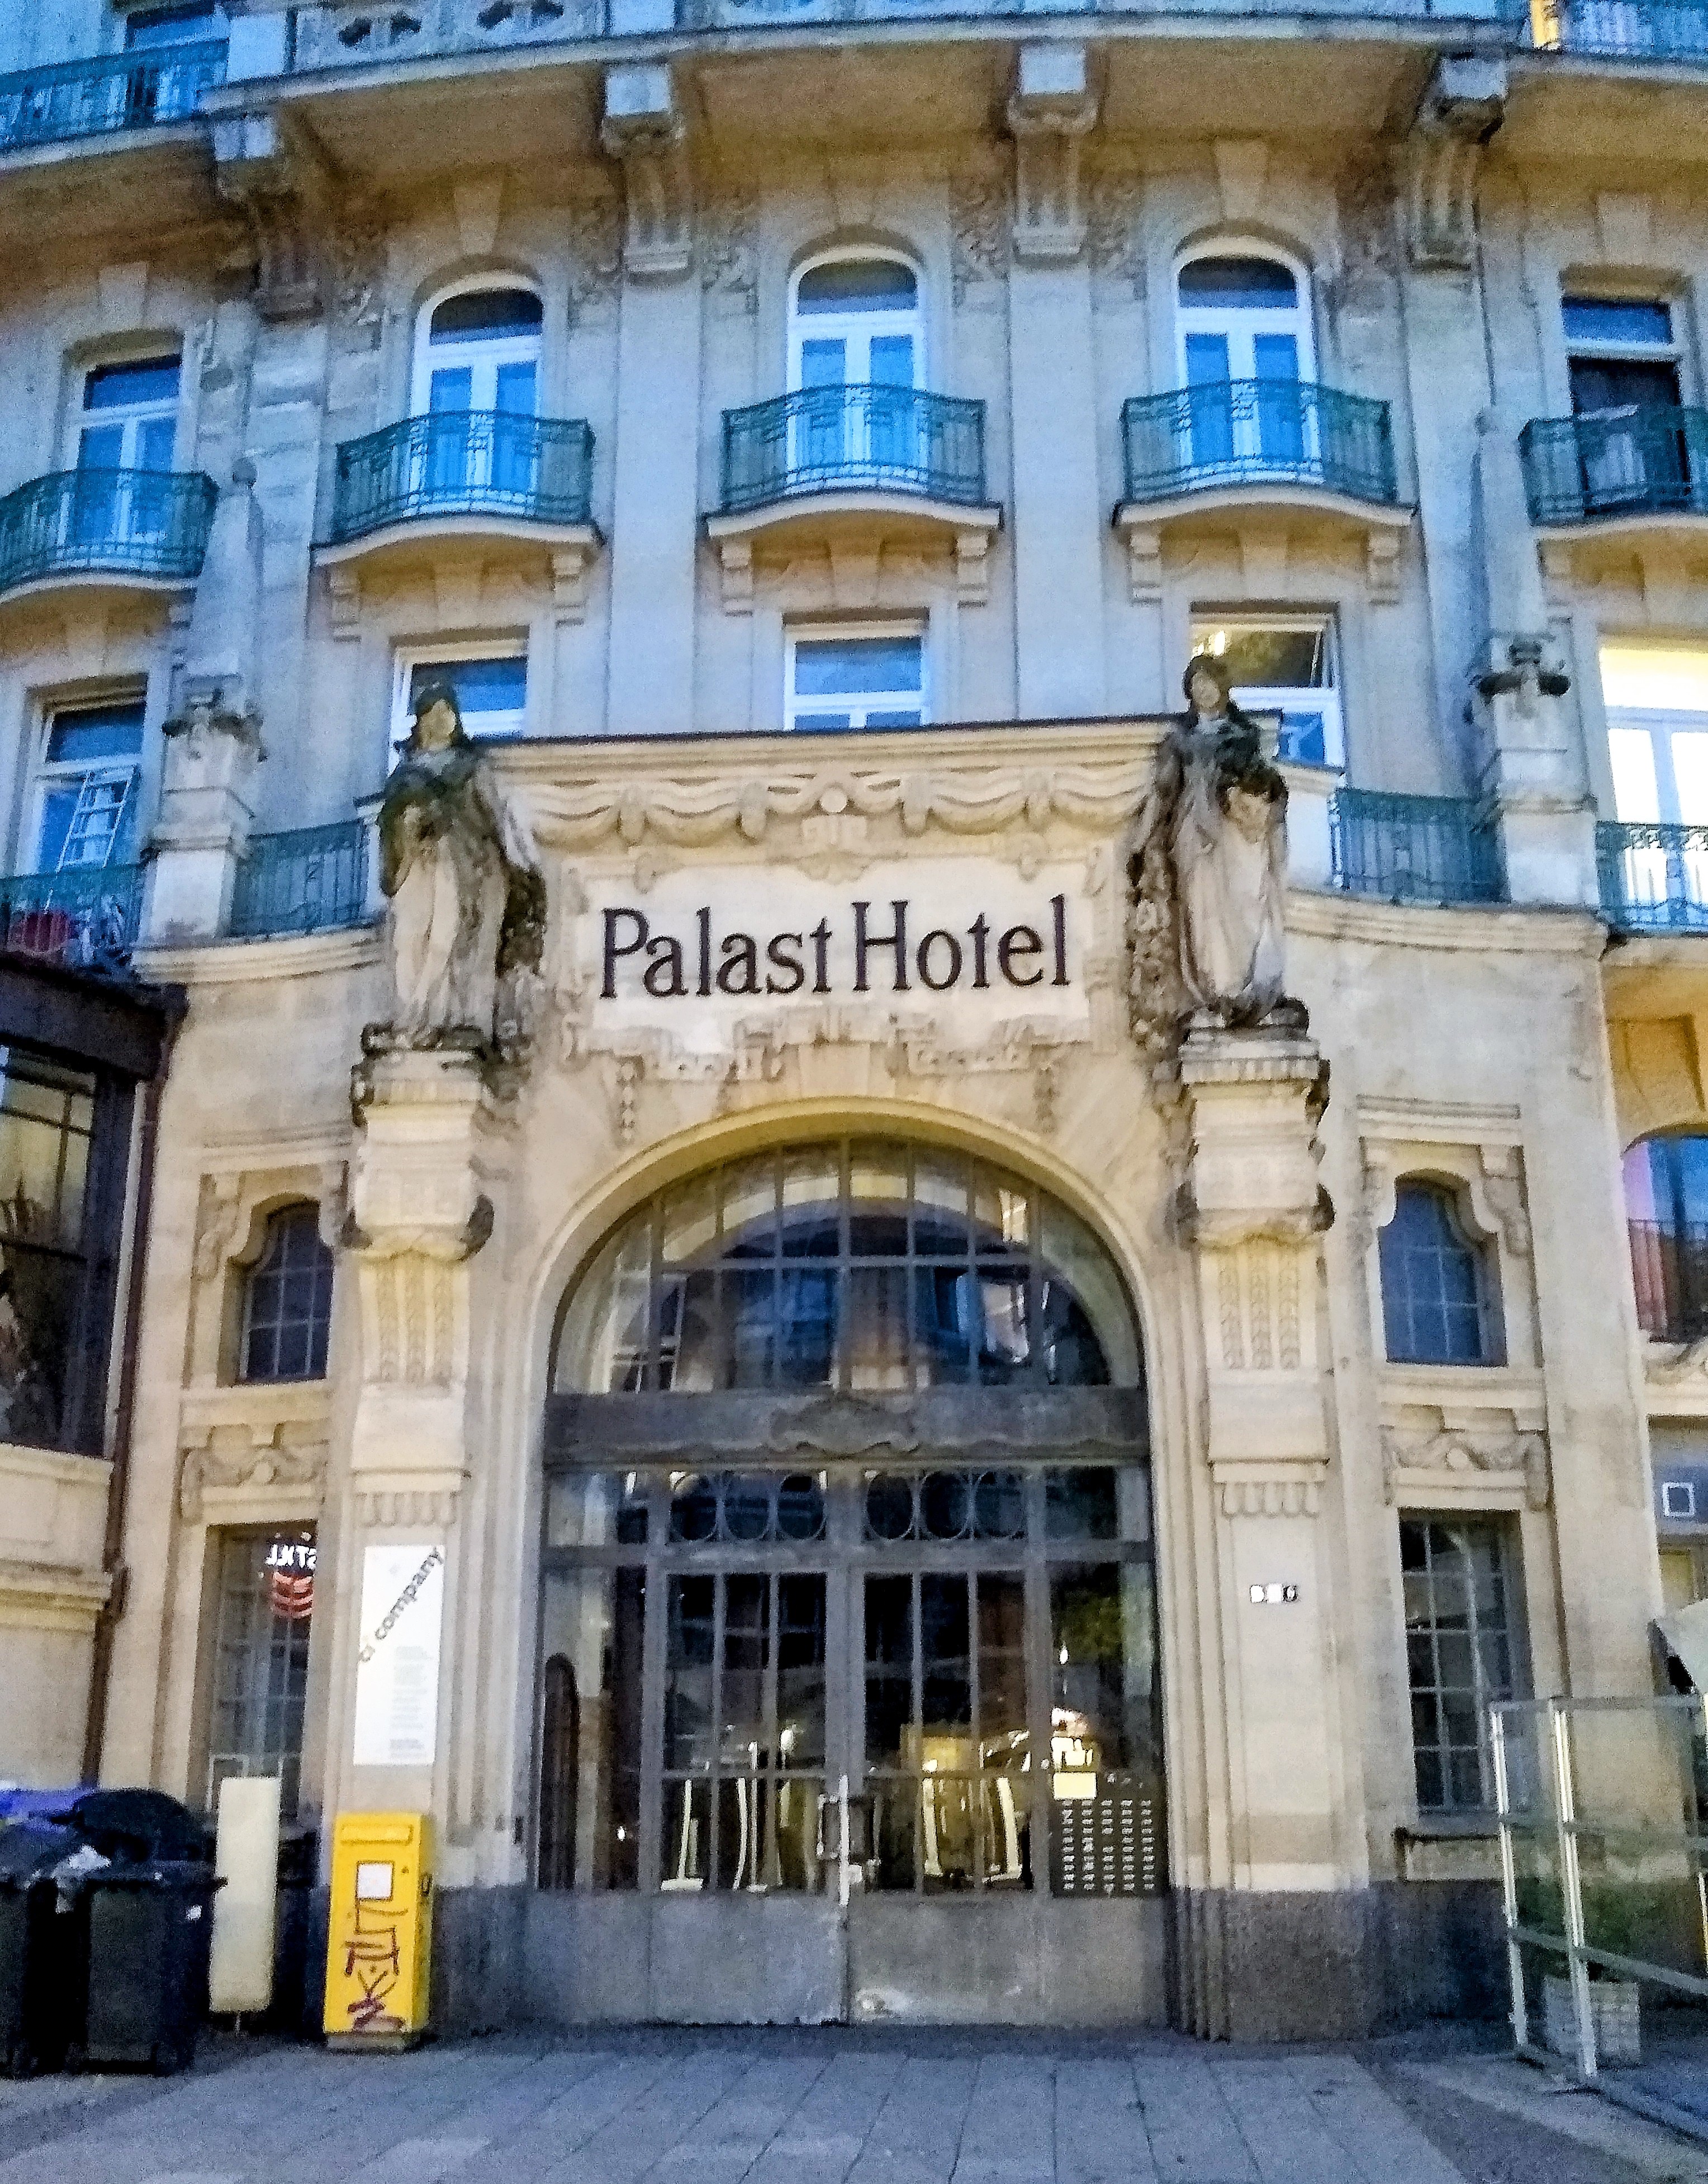 Palast Hotel Restaurant, Wiesbaden